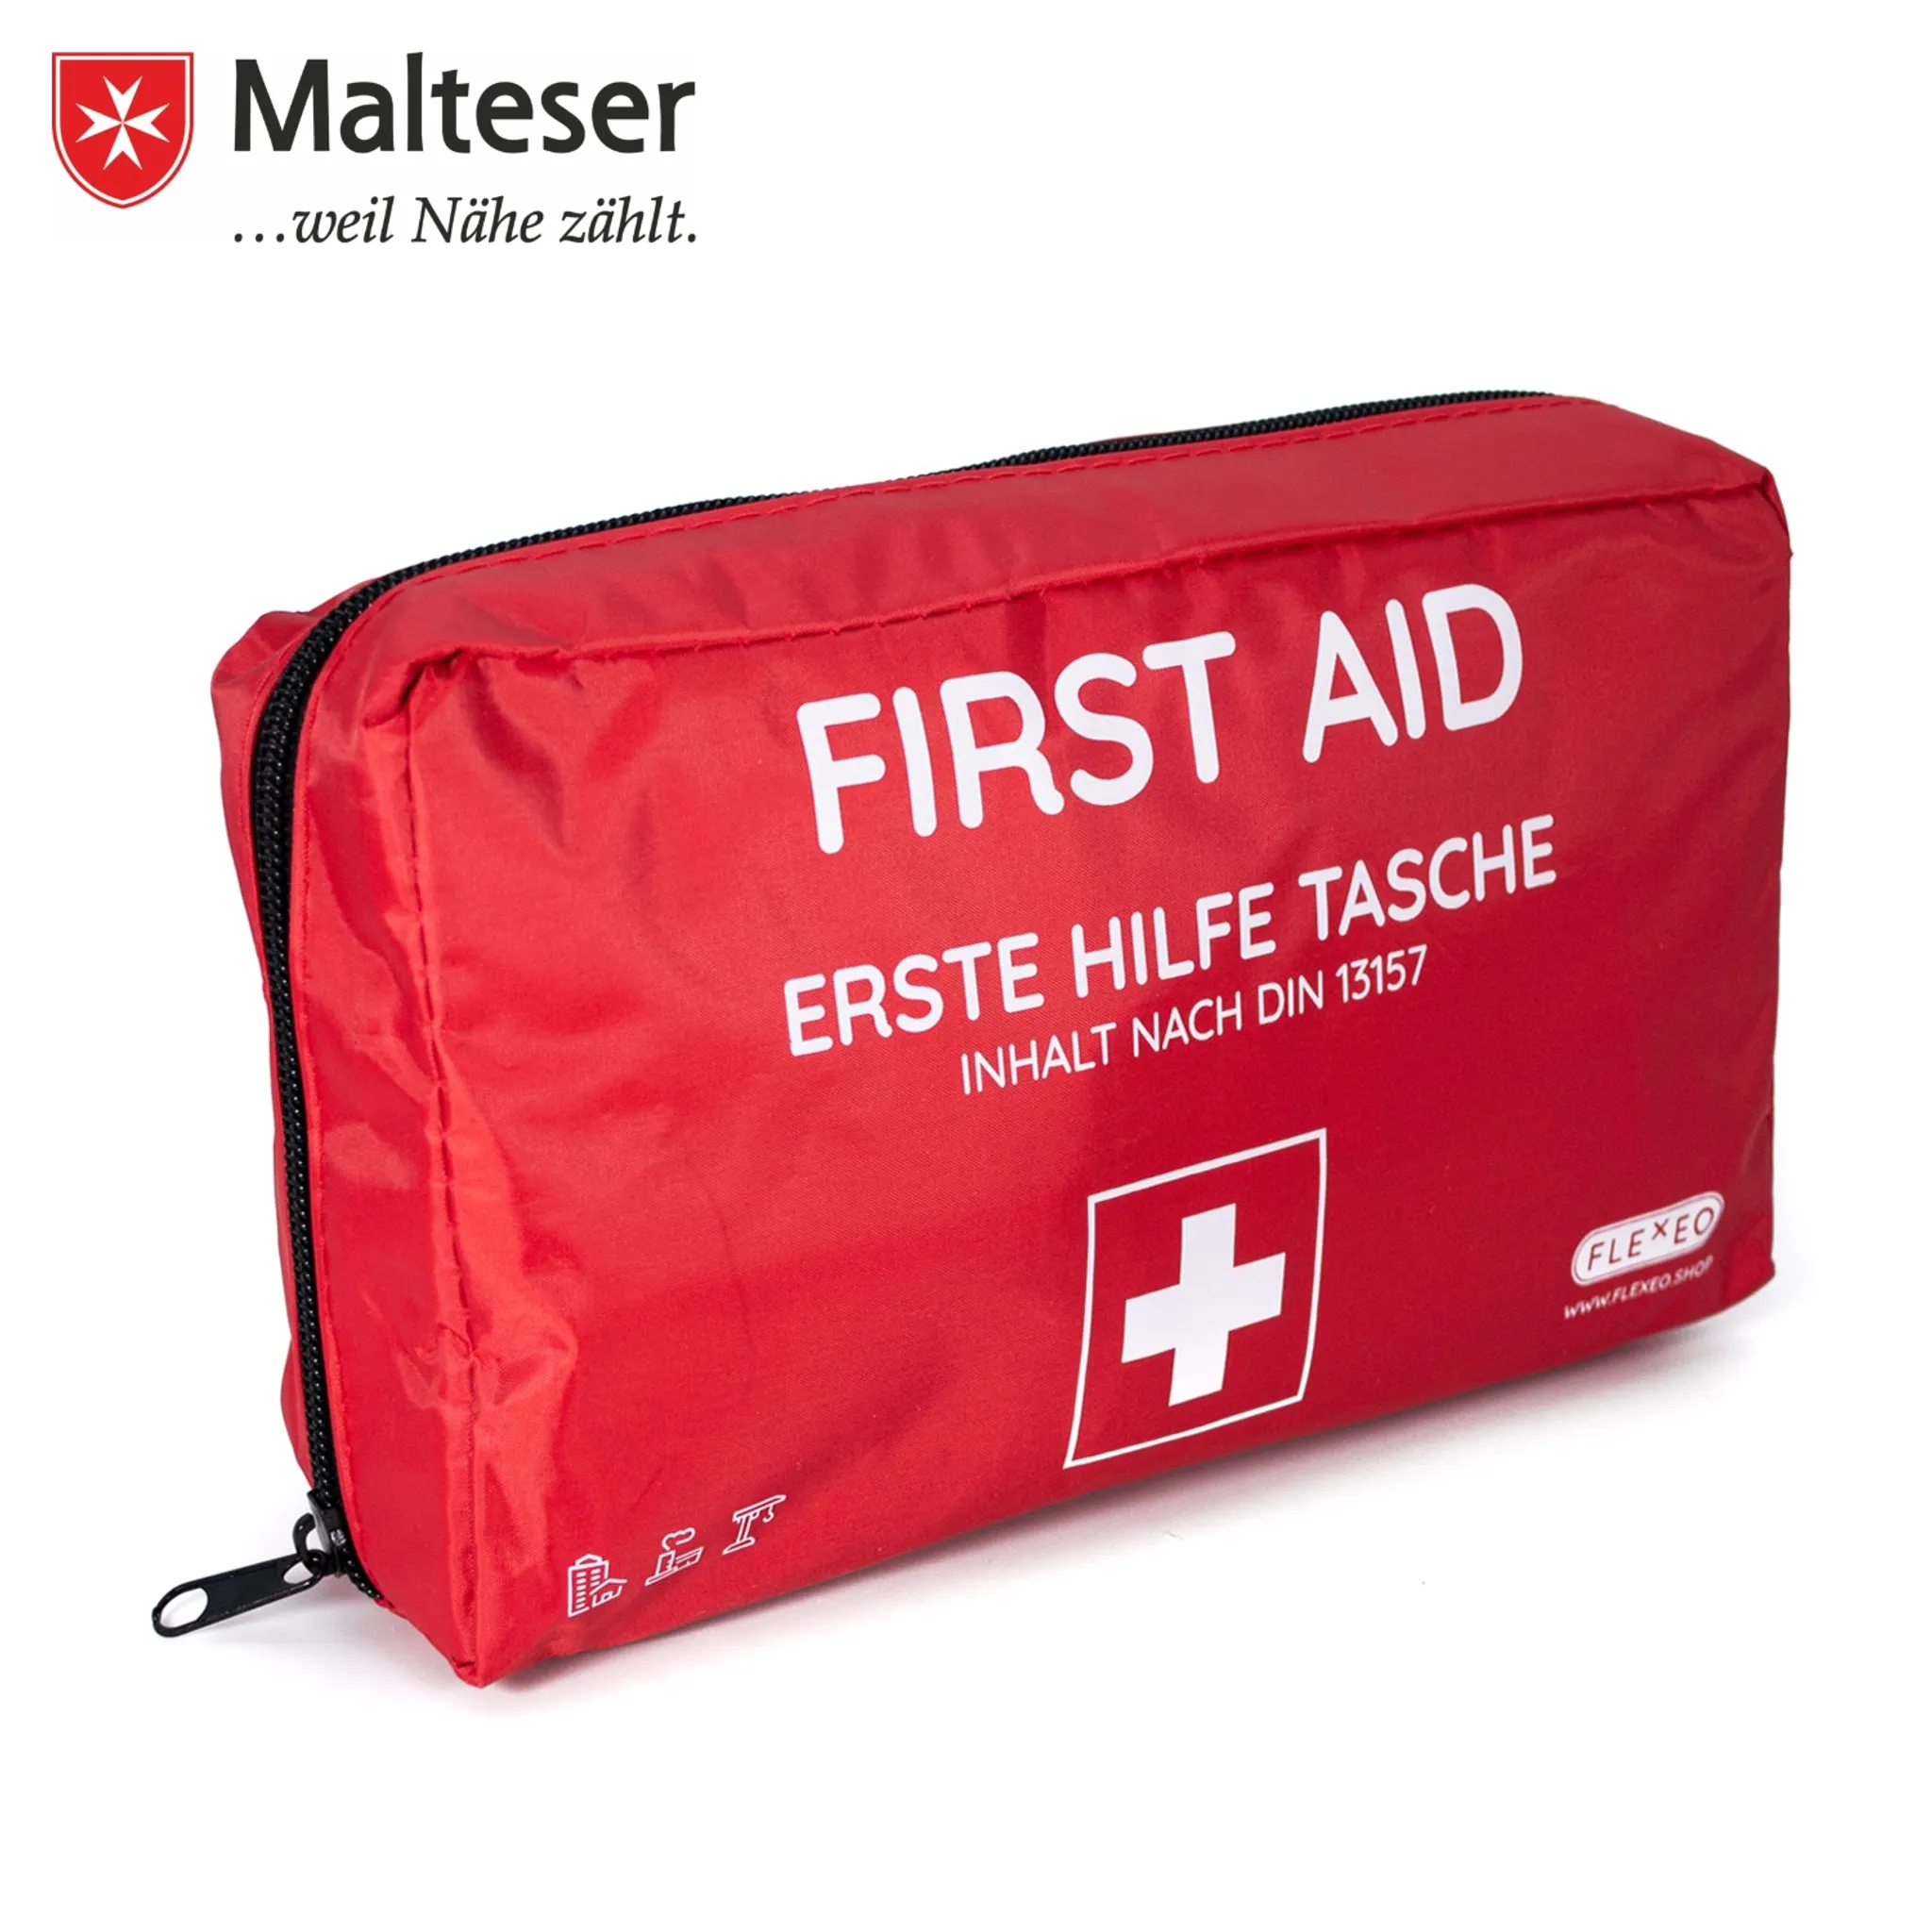 FLEXEO Erste-Hilfe Tasche gemäß DIN 13157